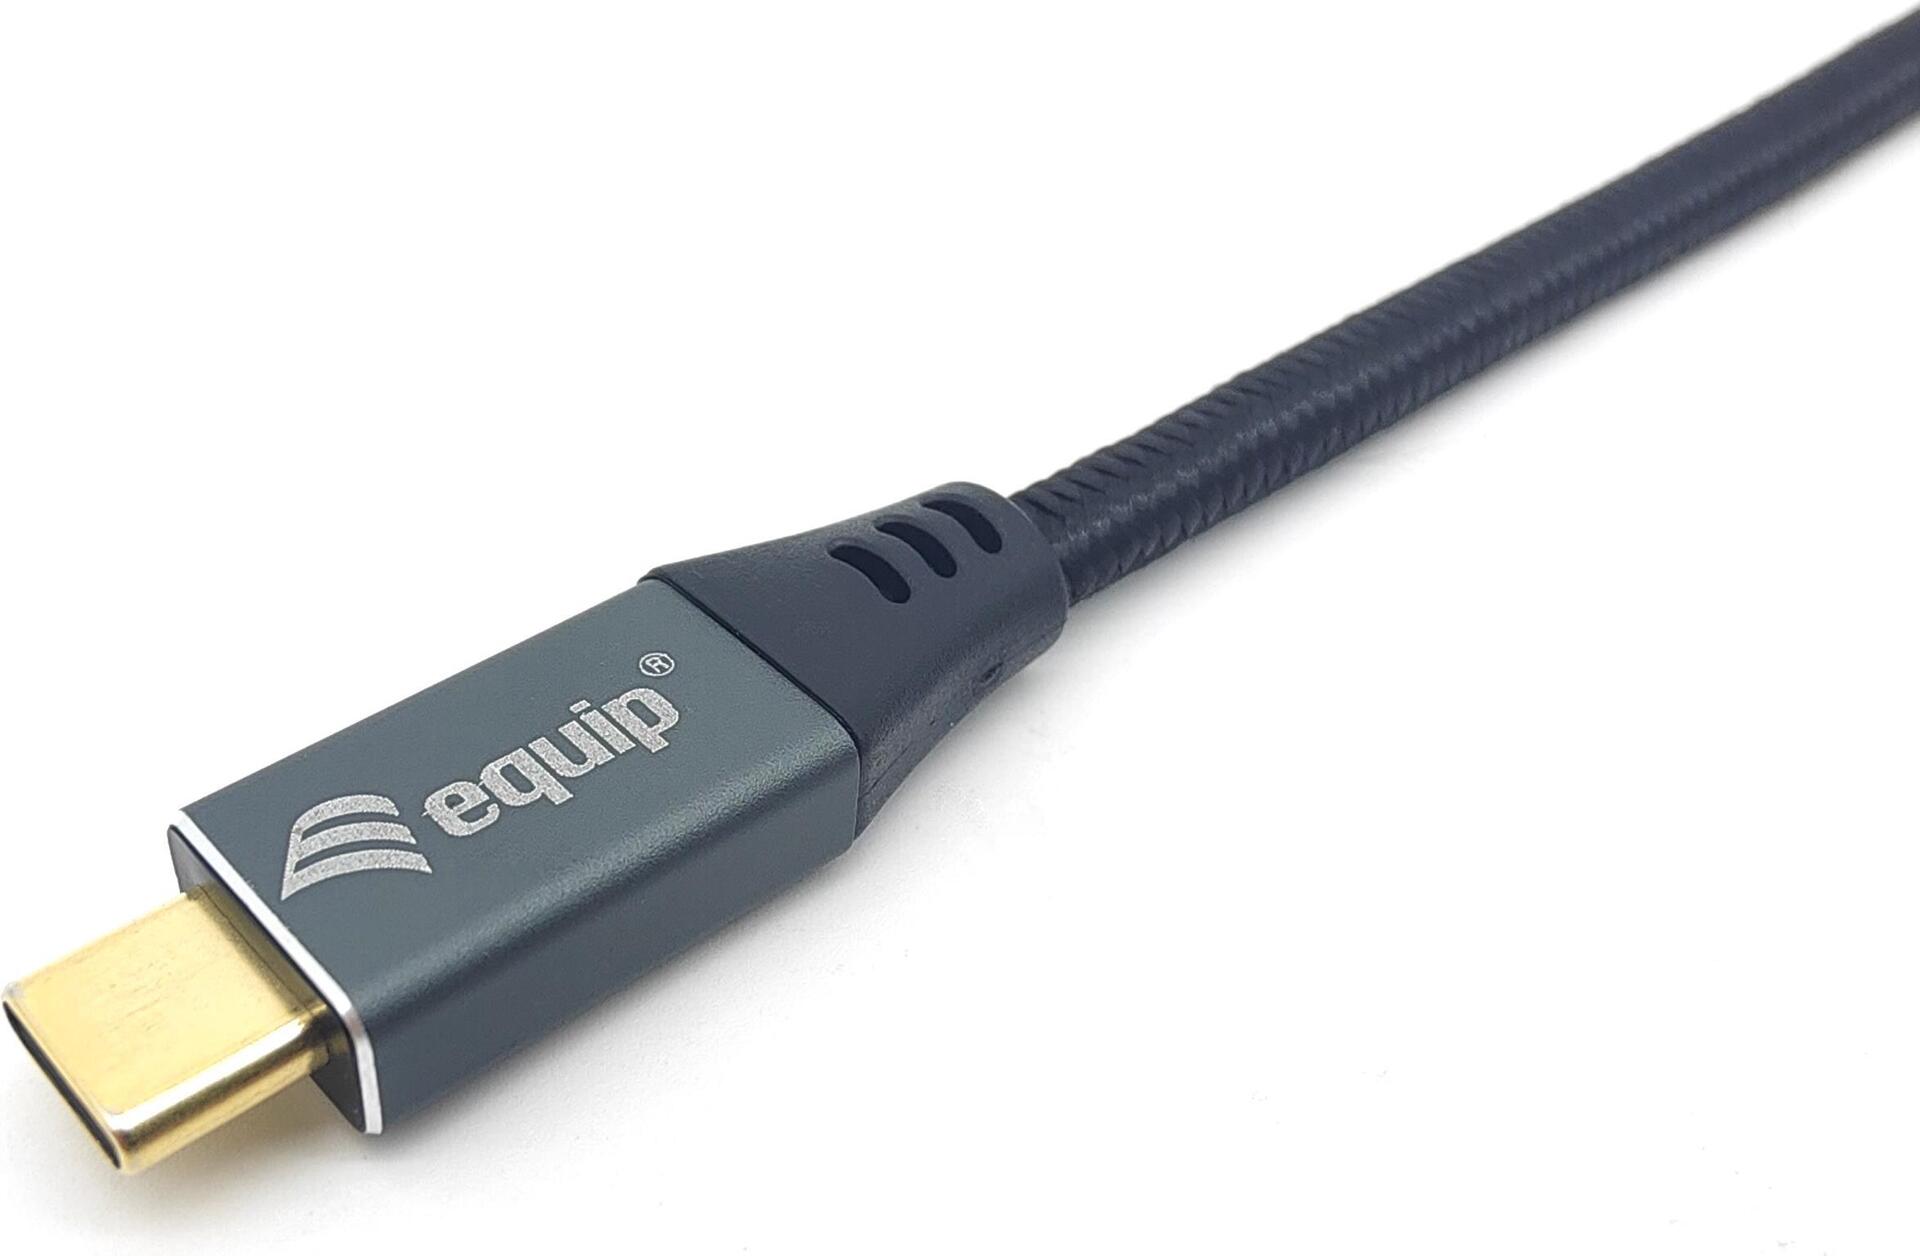 Equip - Adapterkabel - USB-C (M) zu DisplayPort (M) - Thunderbolt 3 / DisplayPort 1.4 - 3 m - unterstützt 4K 60 Hz (3840 x 2160), unterstützt 8K 60 Hz (7680 x 4320), unterstützt 2K 144 Hz (2560 x 1440), unterstützt 1080 Pixel 240 Hz (1920 x 1200) - Schwarz